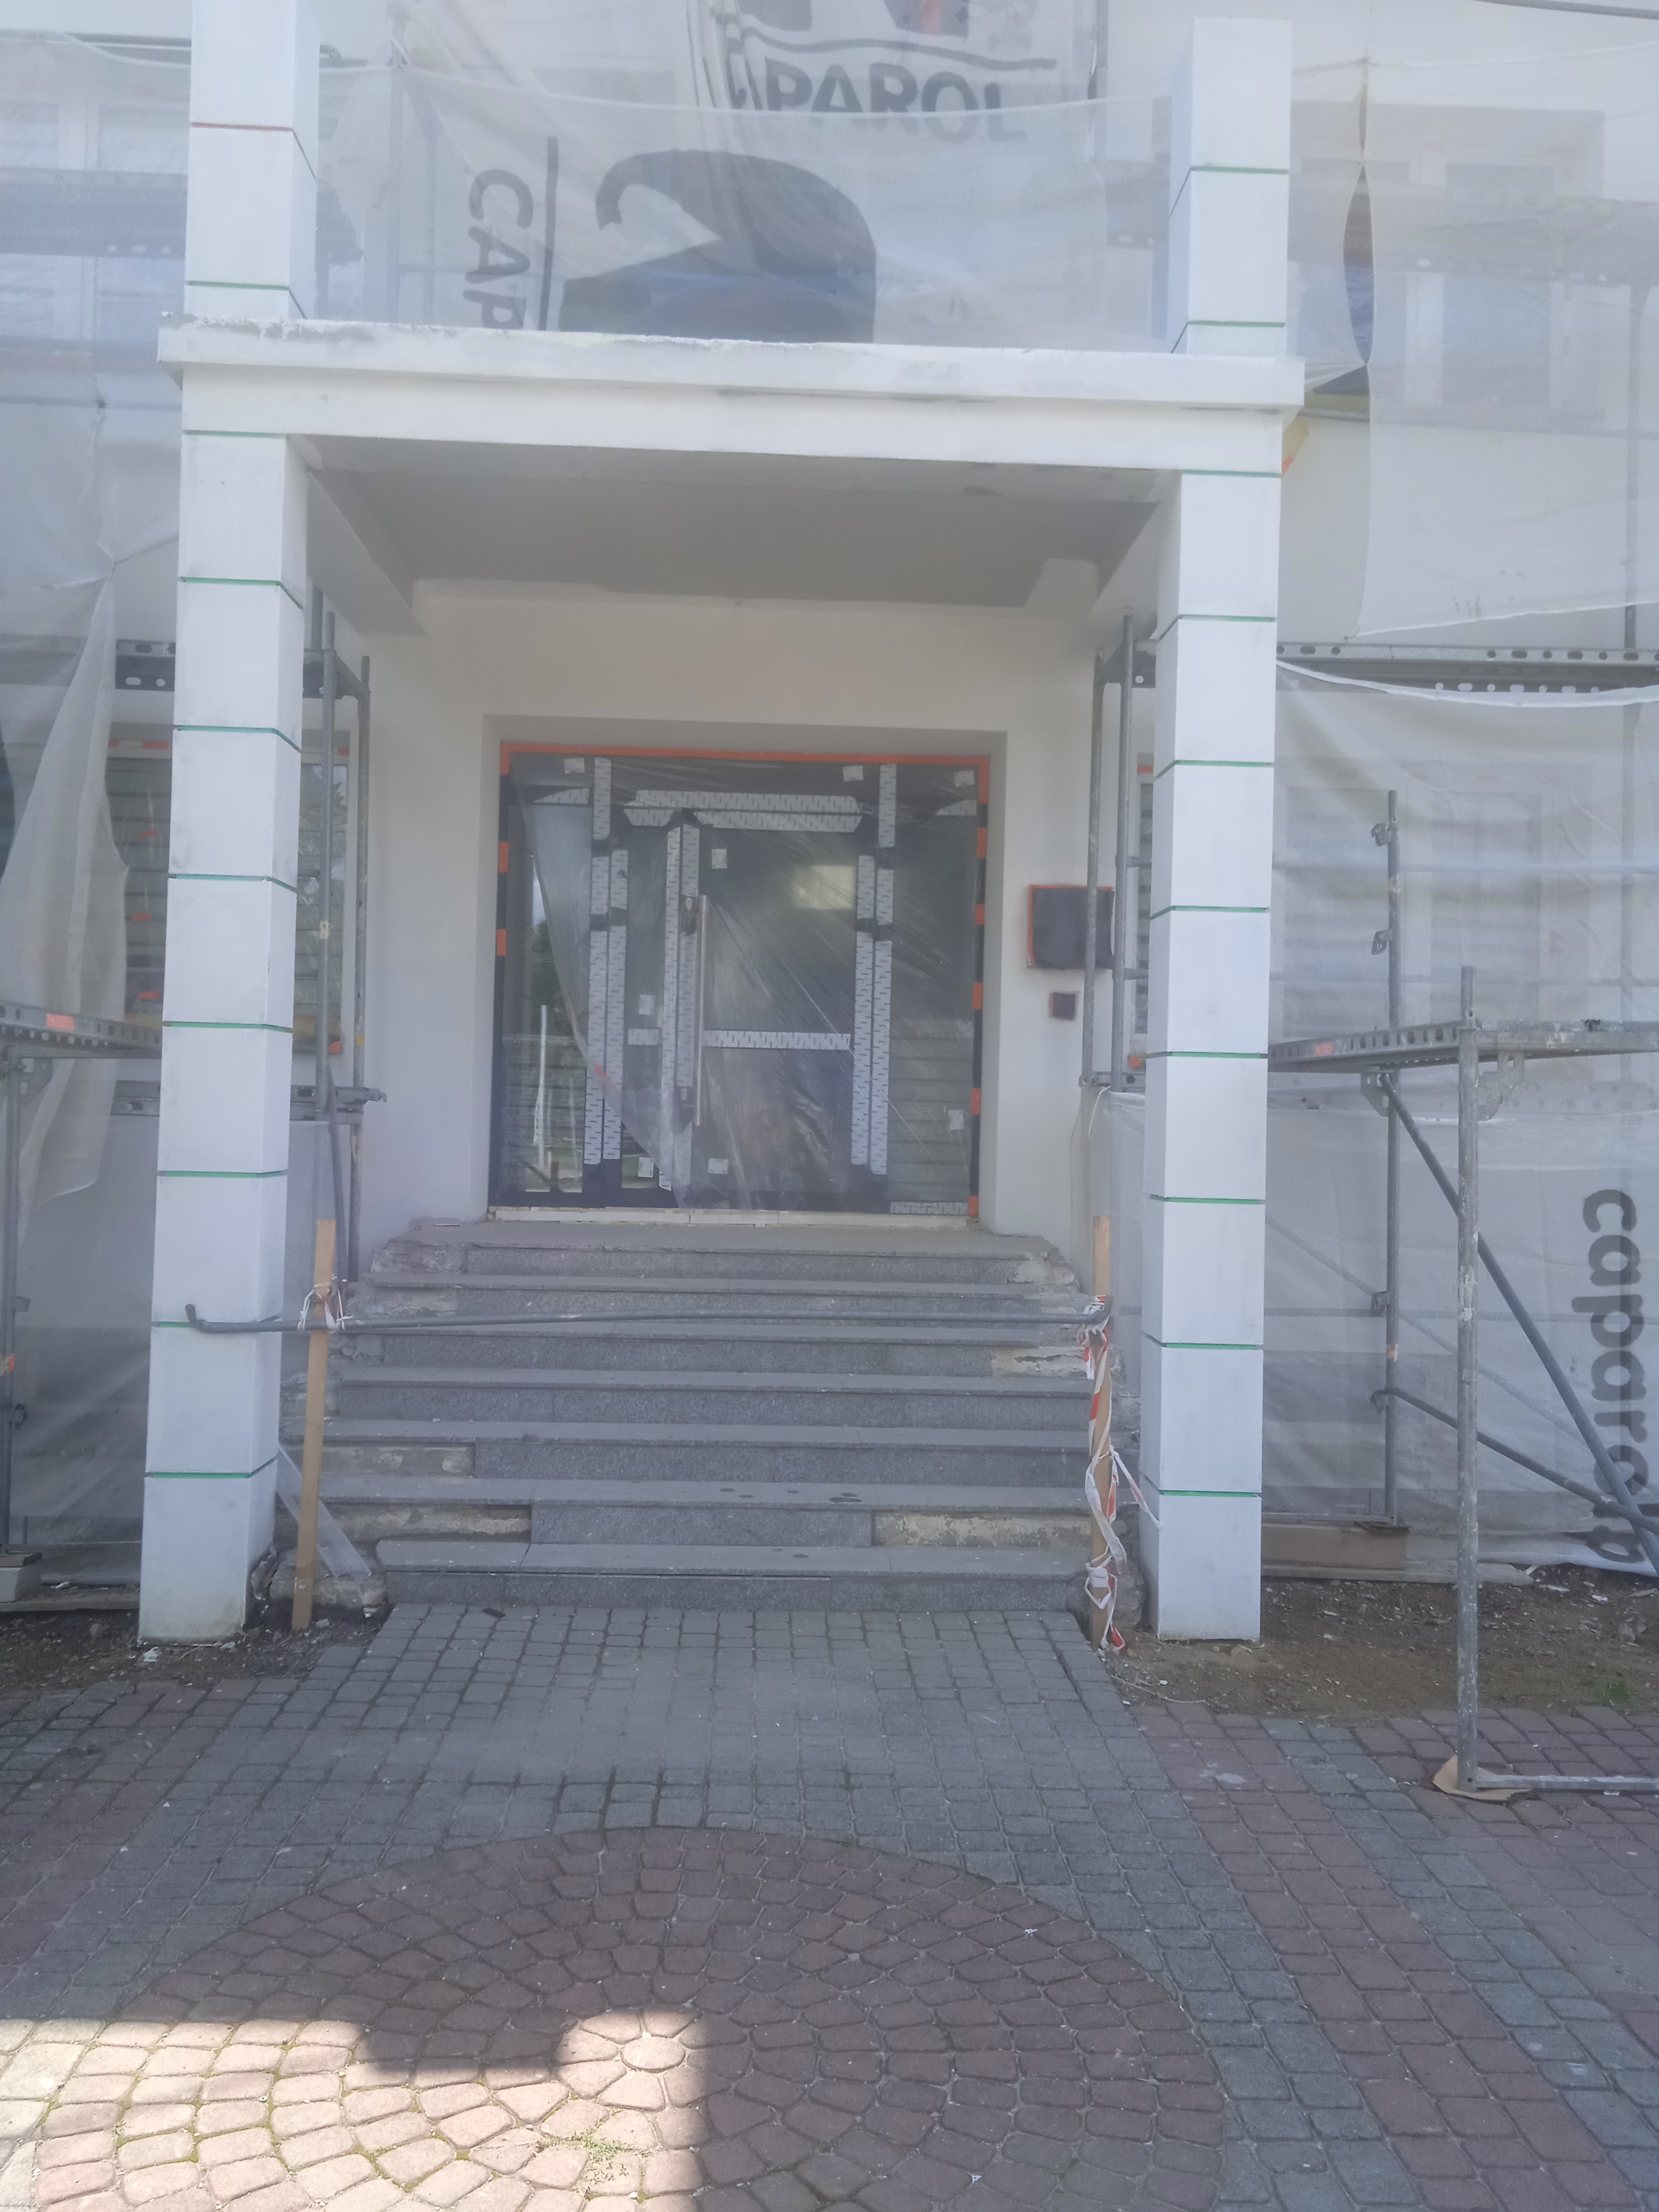 Zdjęcie przedstawia postęp prac przy ocieplaniu budynku urzędu- widok na wejście główne do budynku.